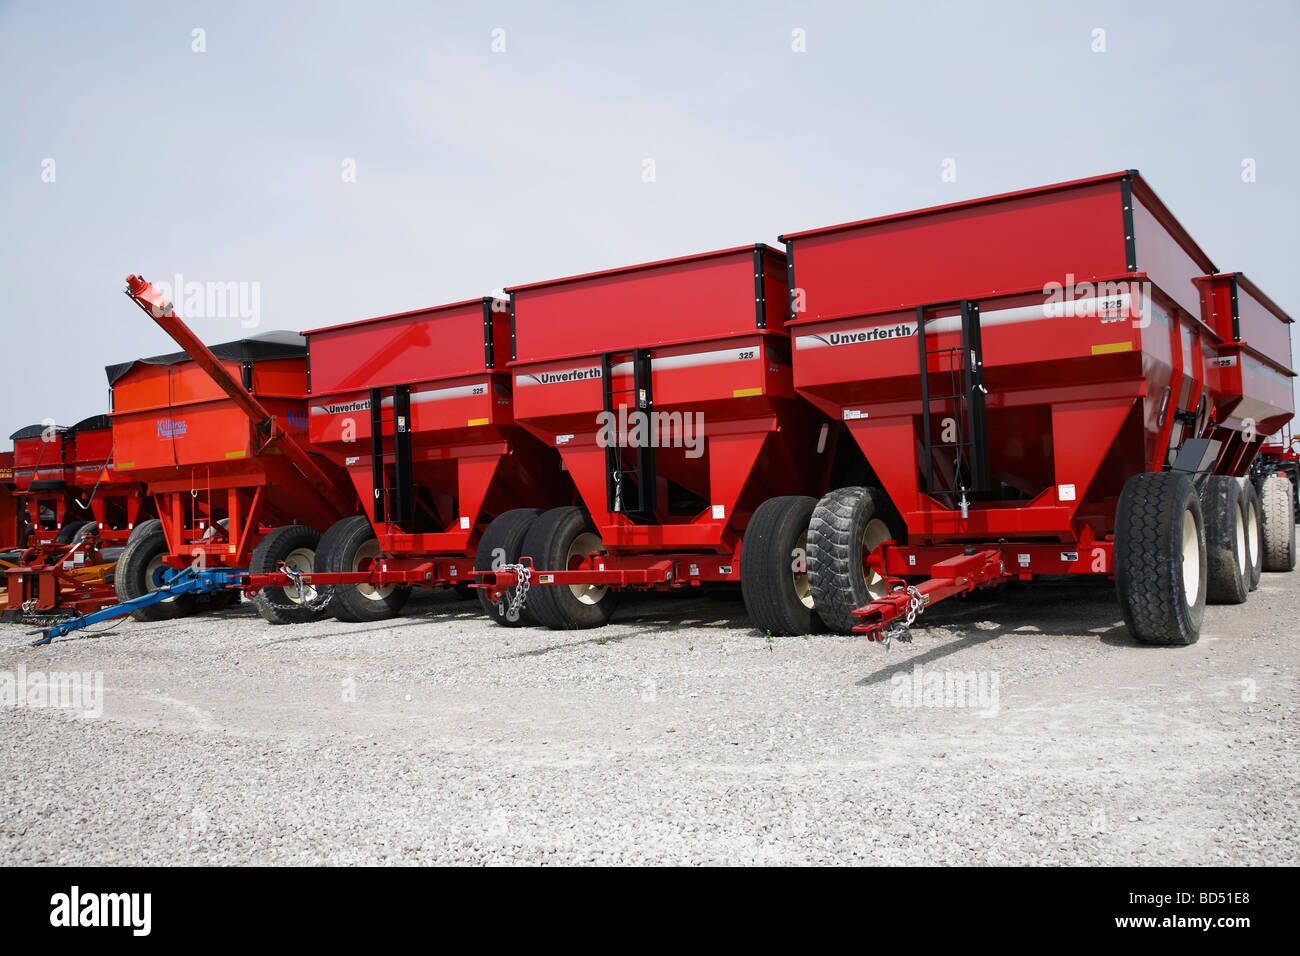 Agricoltura agricola grano agricolo attrezzature per impieghi gravosi carri Unverferth nessuno negli Stati Uniti ad alta risoluzione Foto Stock